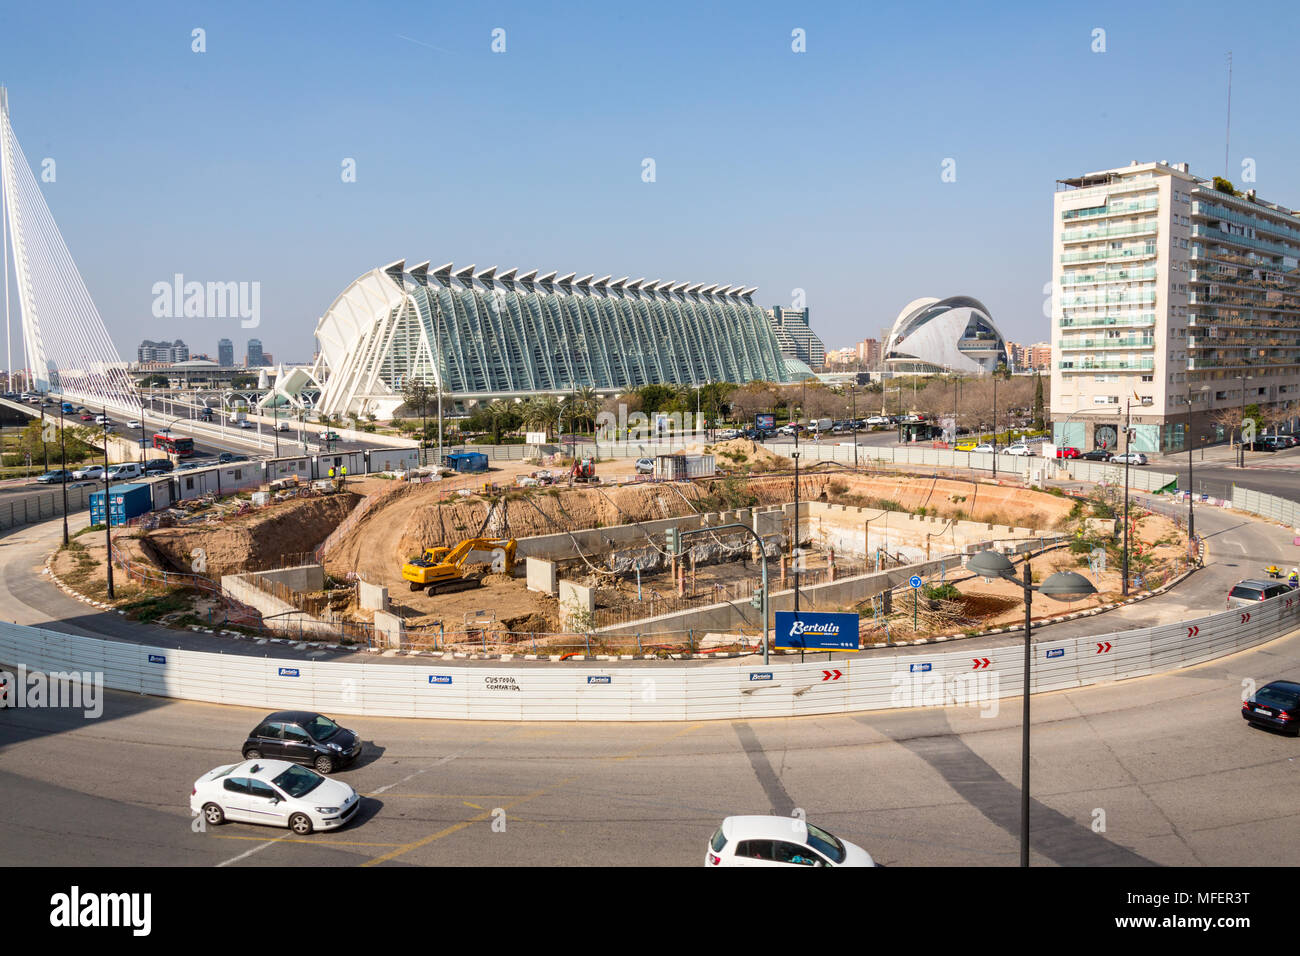 Valence/Espagne - le 17 mars 2015 : dans le centre est le El Museu de les Ciències Principe Felipe, en même temps qu'à l'avant-plan de construction plus whil Banque D'Images